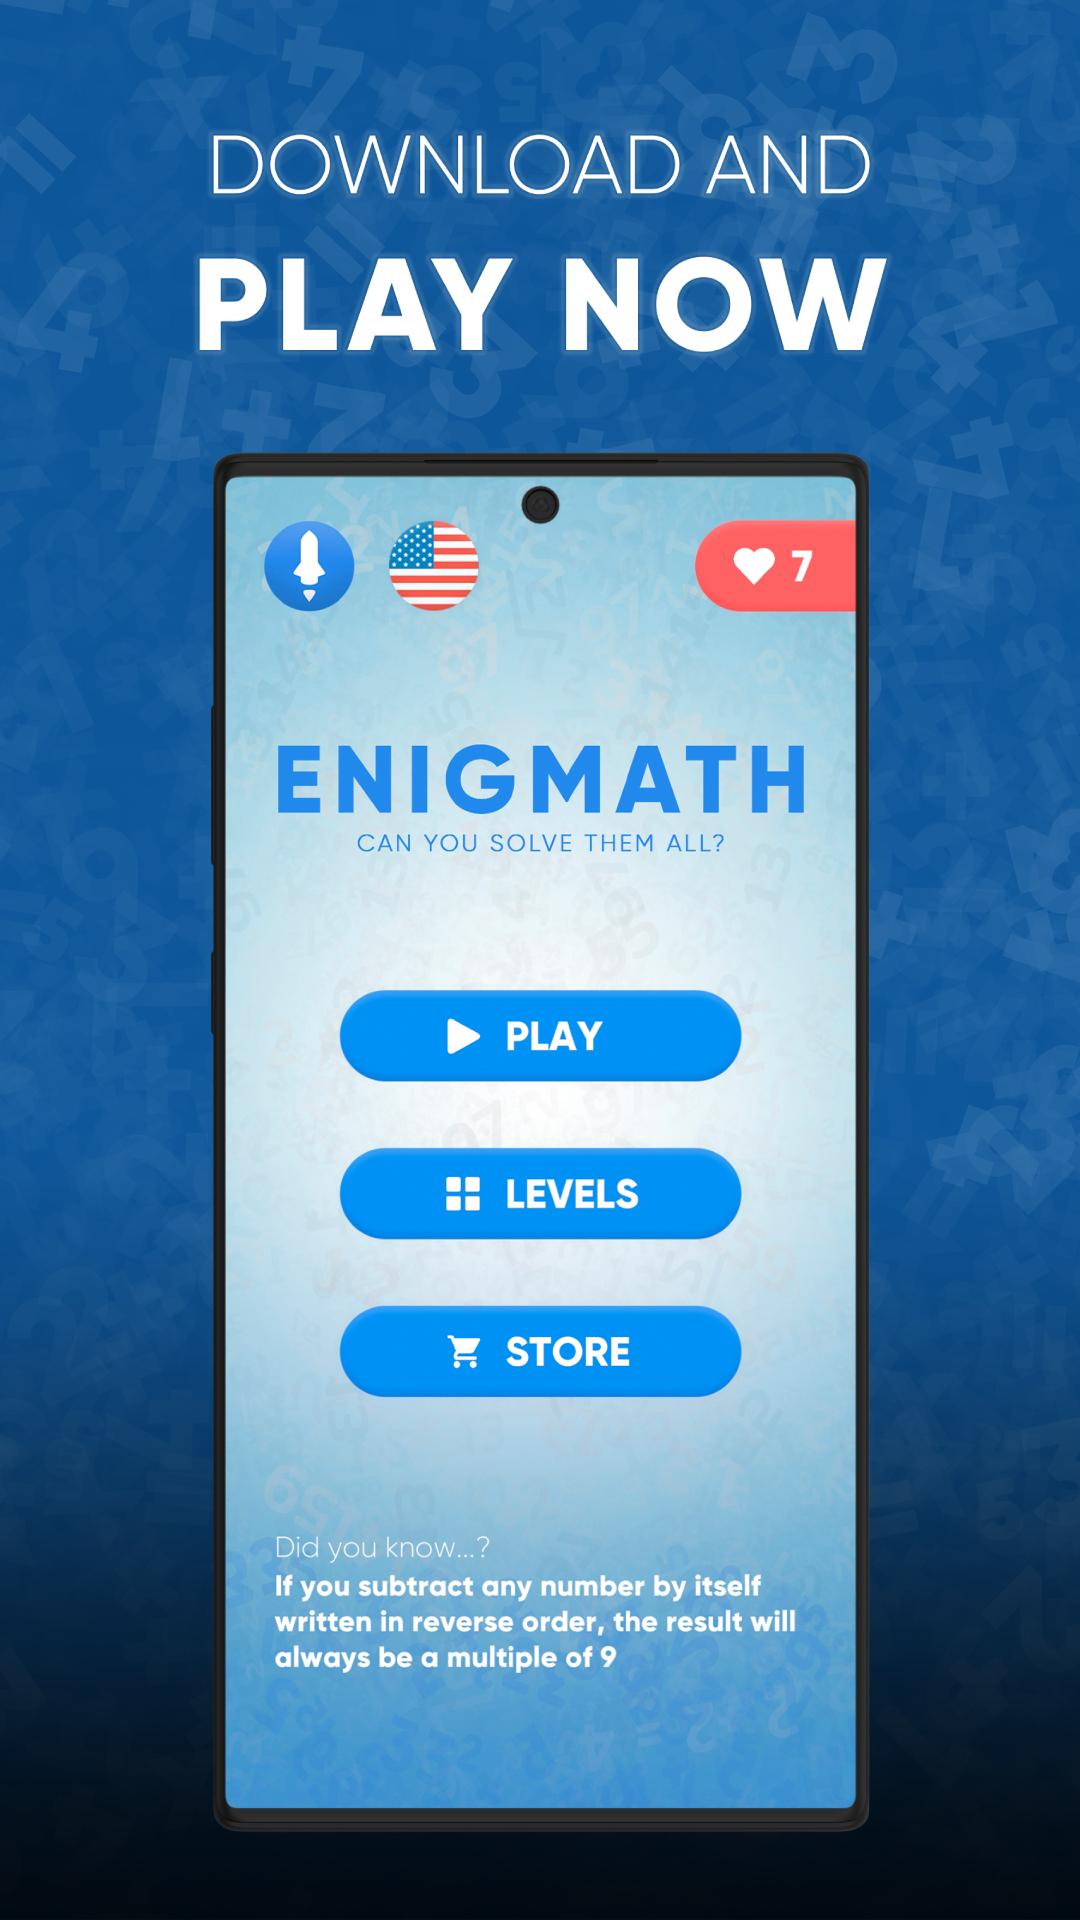 Enigmath - 1 of 4